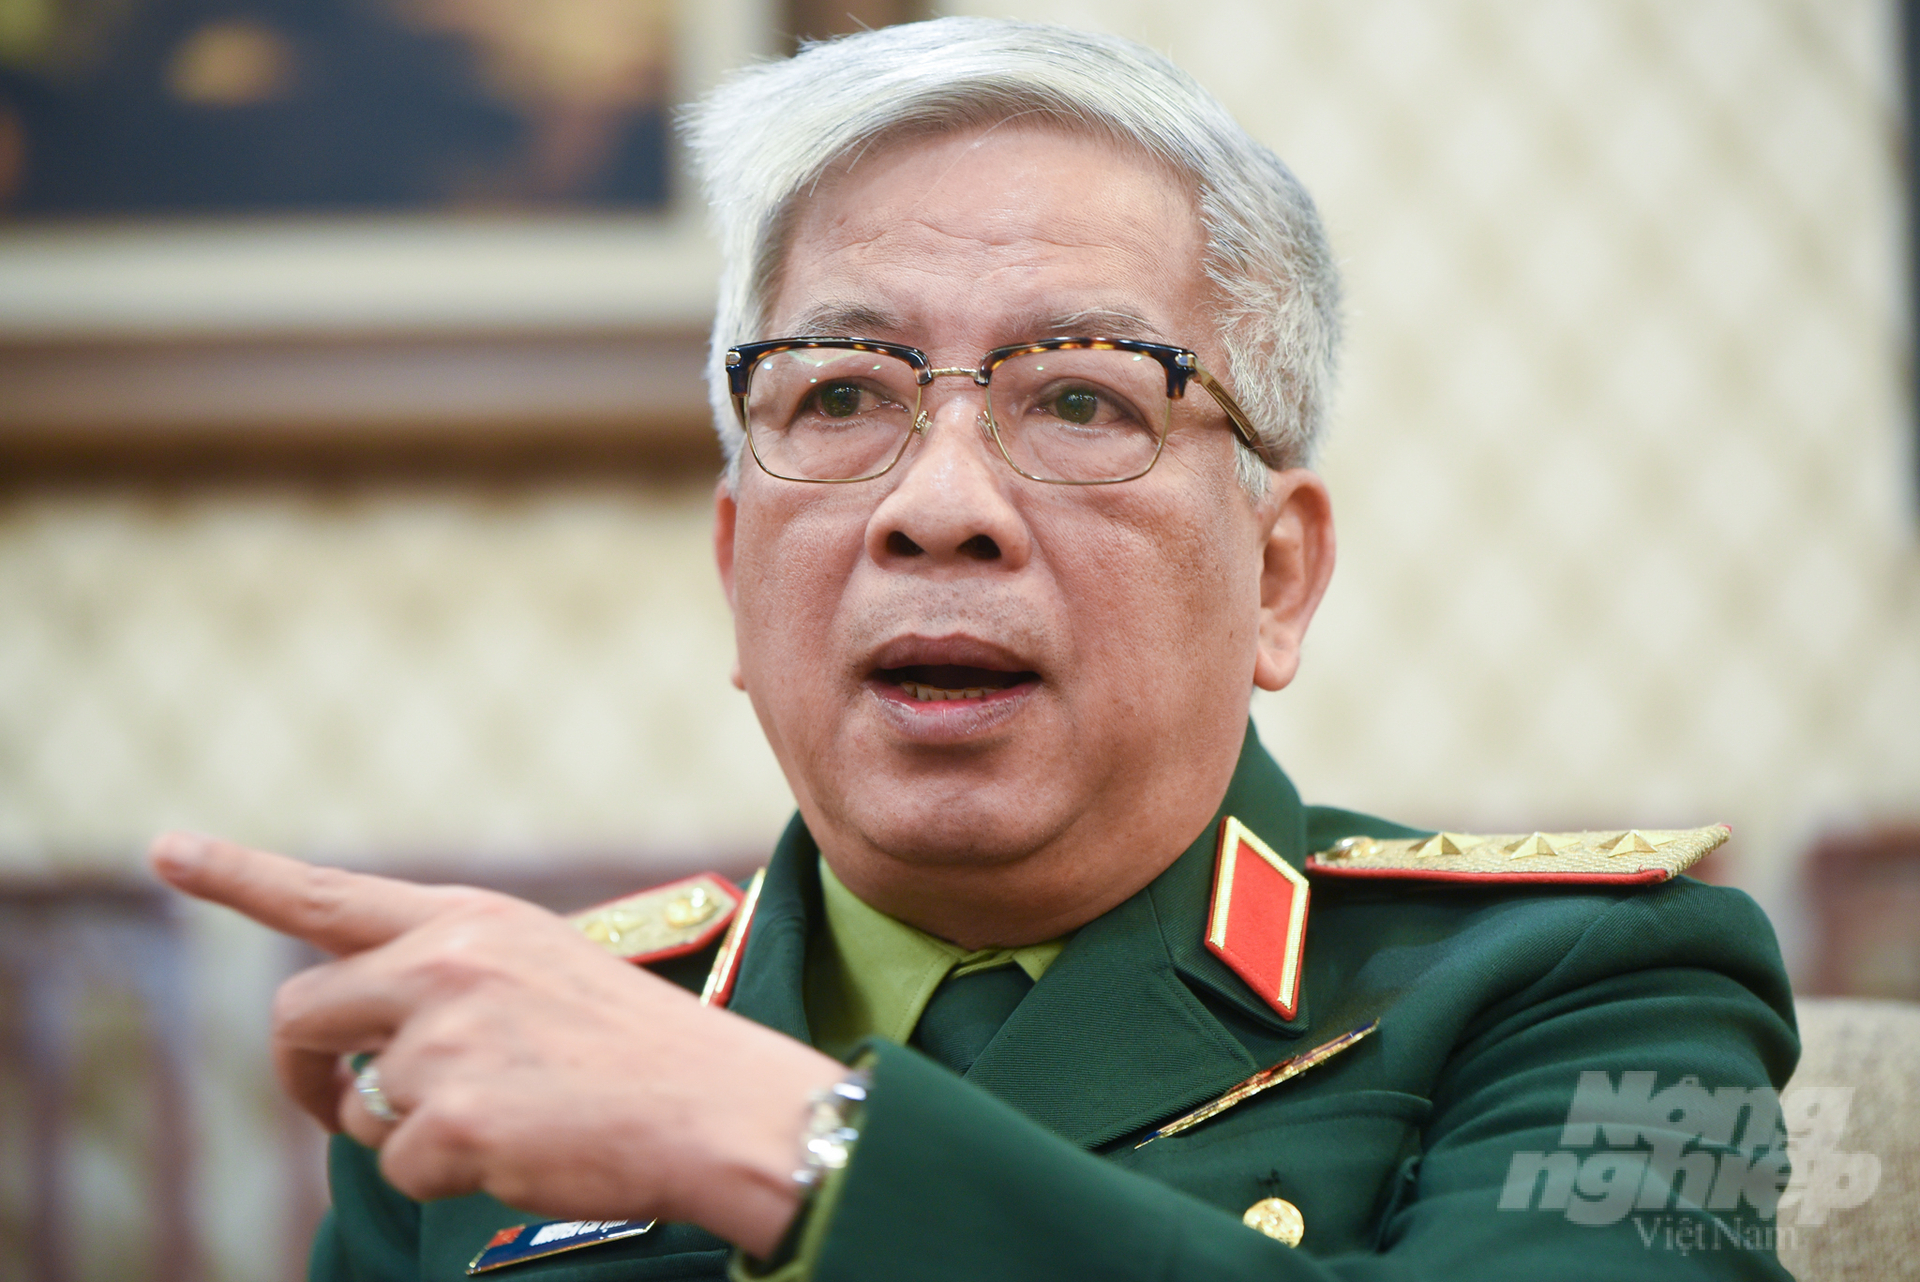 Thượng tướng Nguyễn Chí Vịnh đã góp phần quan trọng vào việc bảo vệ thành công mọi lợi ích của Việt Nam tại Biển Đông bằng biện pháp hòa bình. Ảnh: Tùng Đinh.